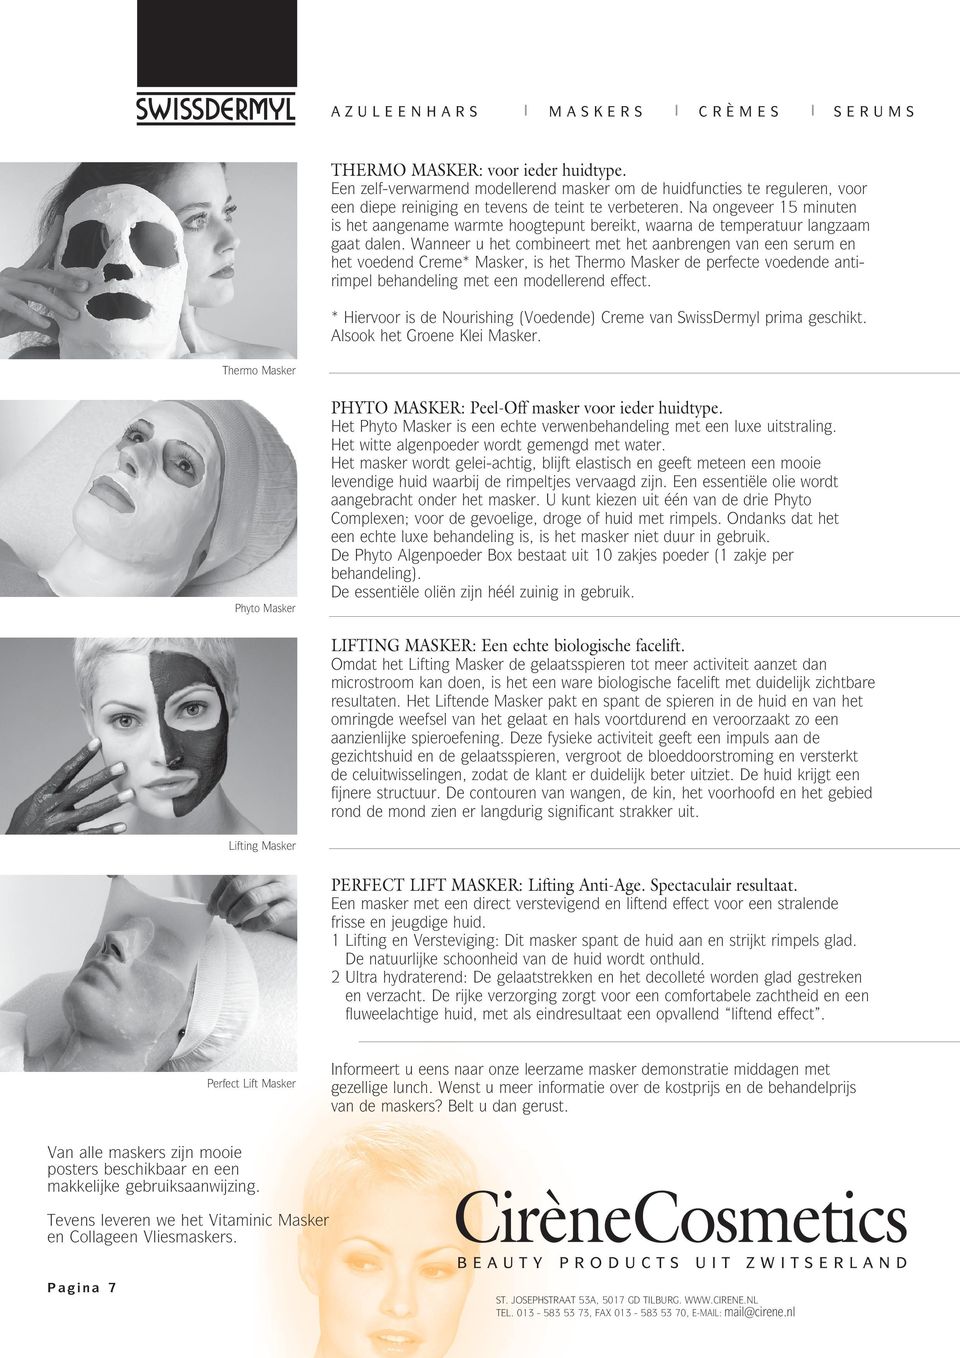 Wanneer u het combineert met het aanbrengen van een serum en het voedend Creme* Masker, is het Thermo Masker de perfecte voedende antirimpel behandeling met een modellerend effect.